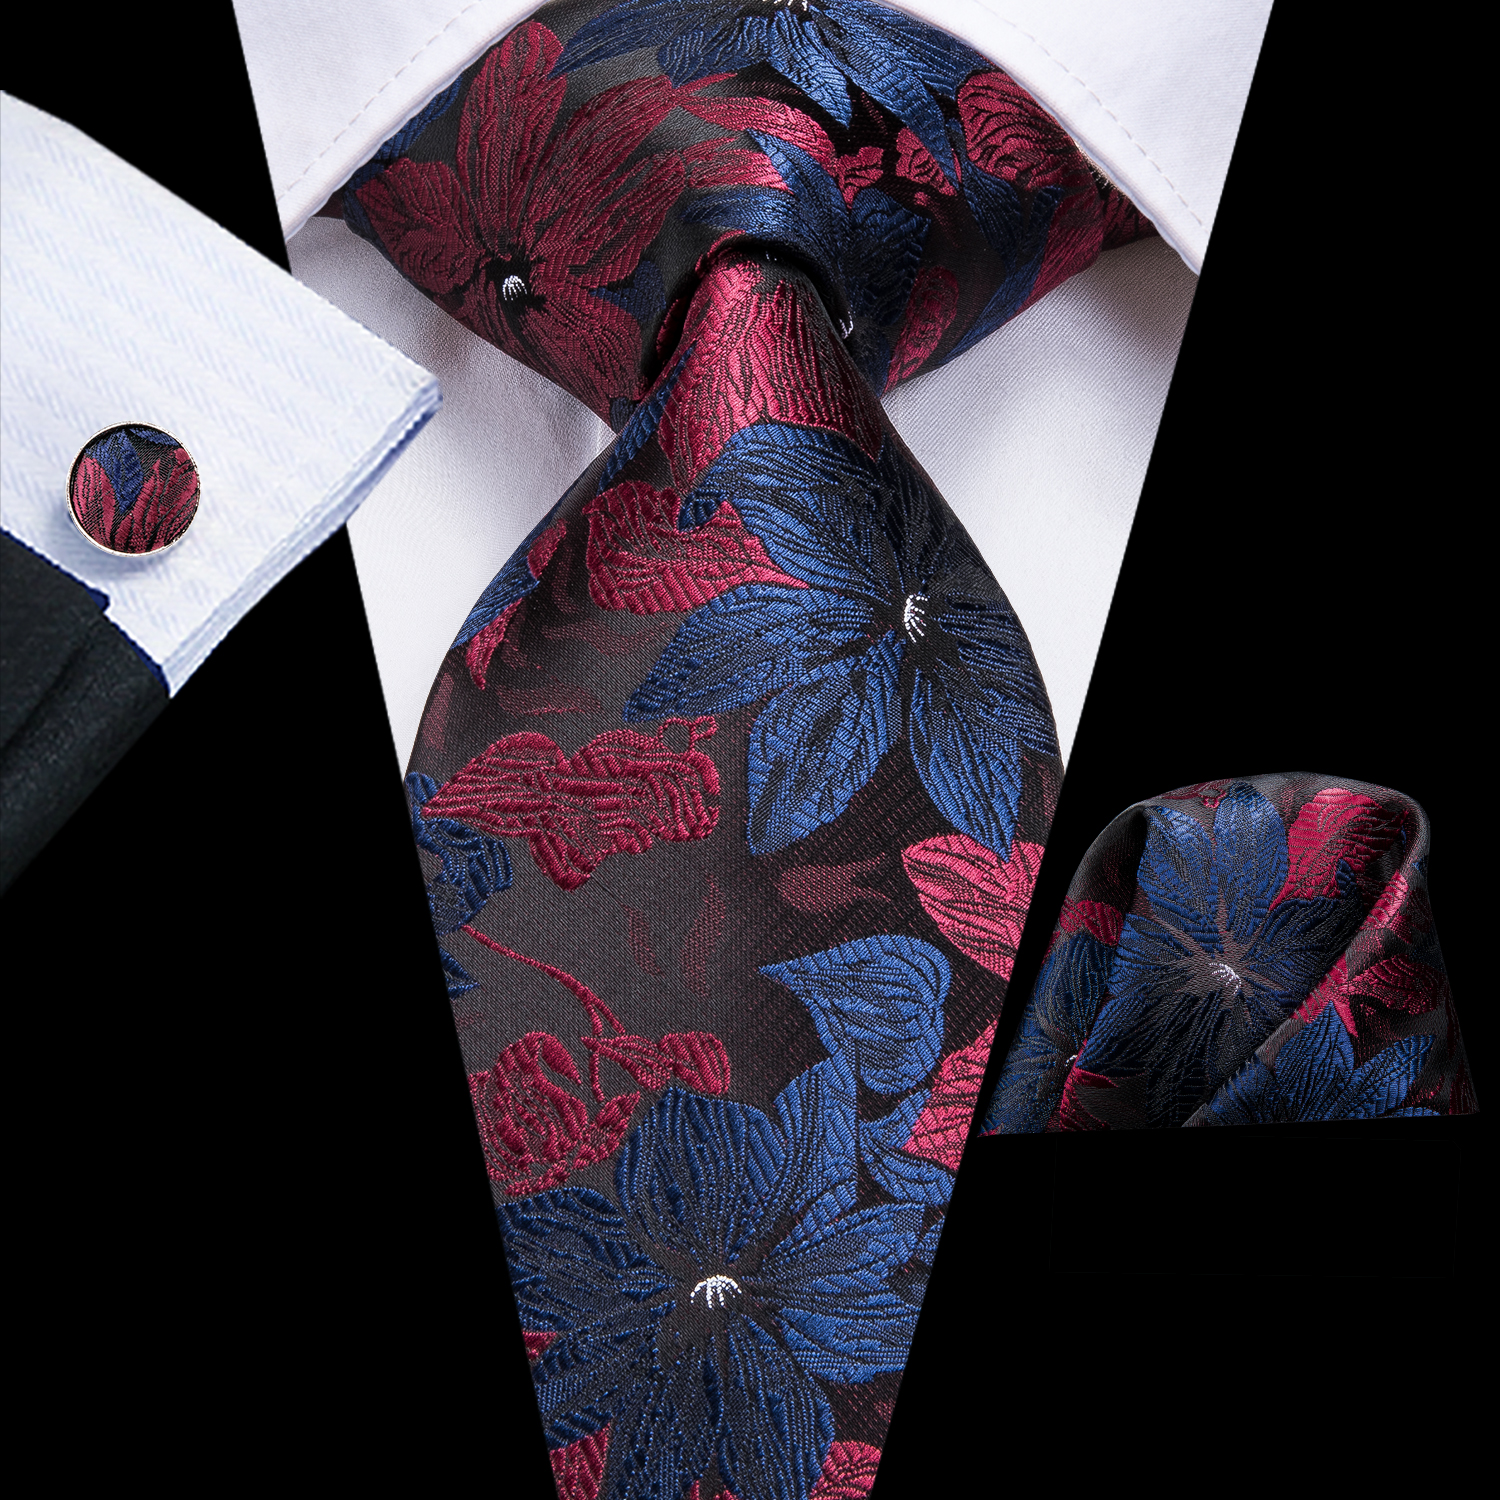 Hi-Tie Luxury Floral Paisley Ties for Men Male Desigenr Red Green Snow Ties for Christmas Adult Silk Tie Hanky Cufflinks Tie Set